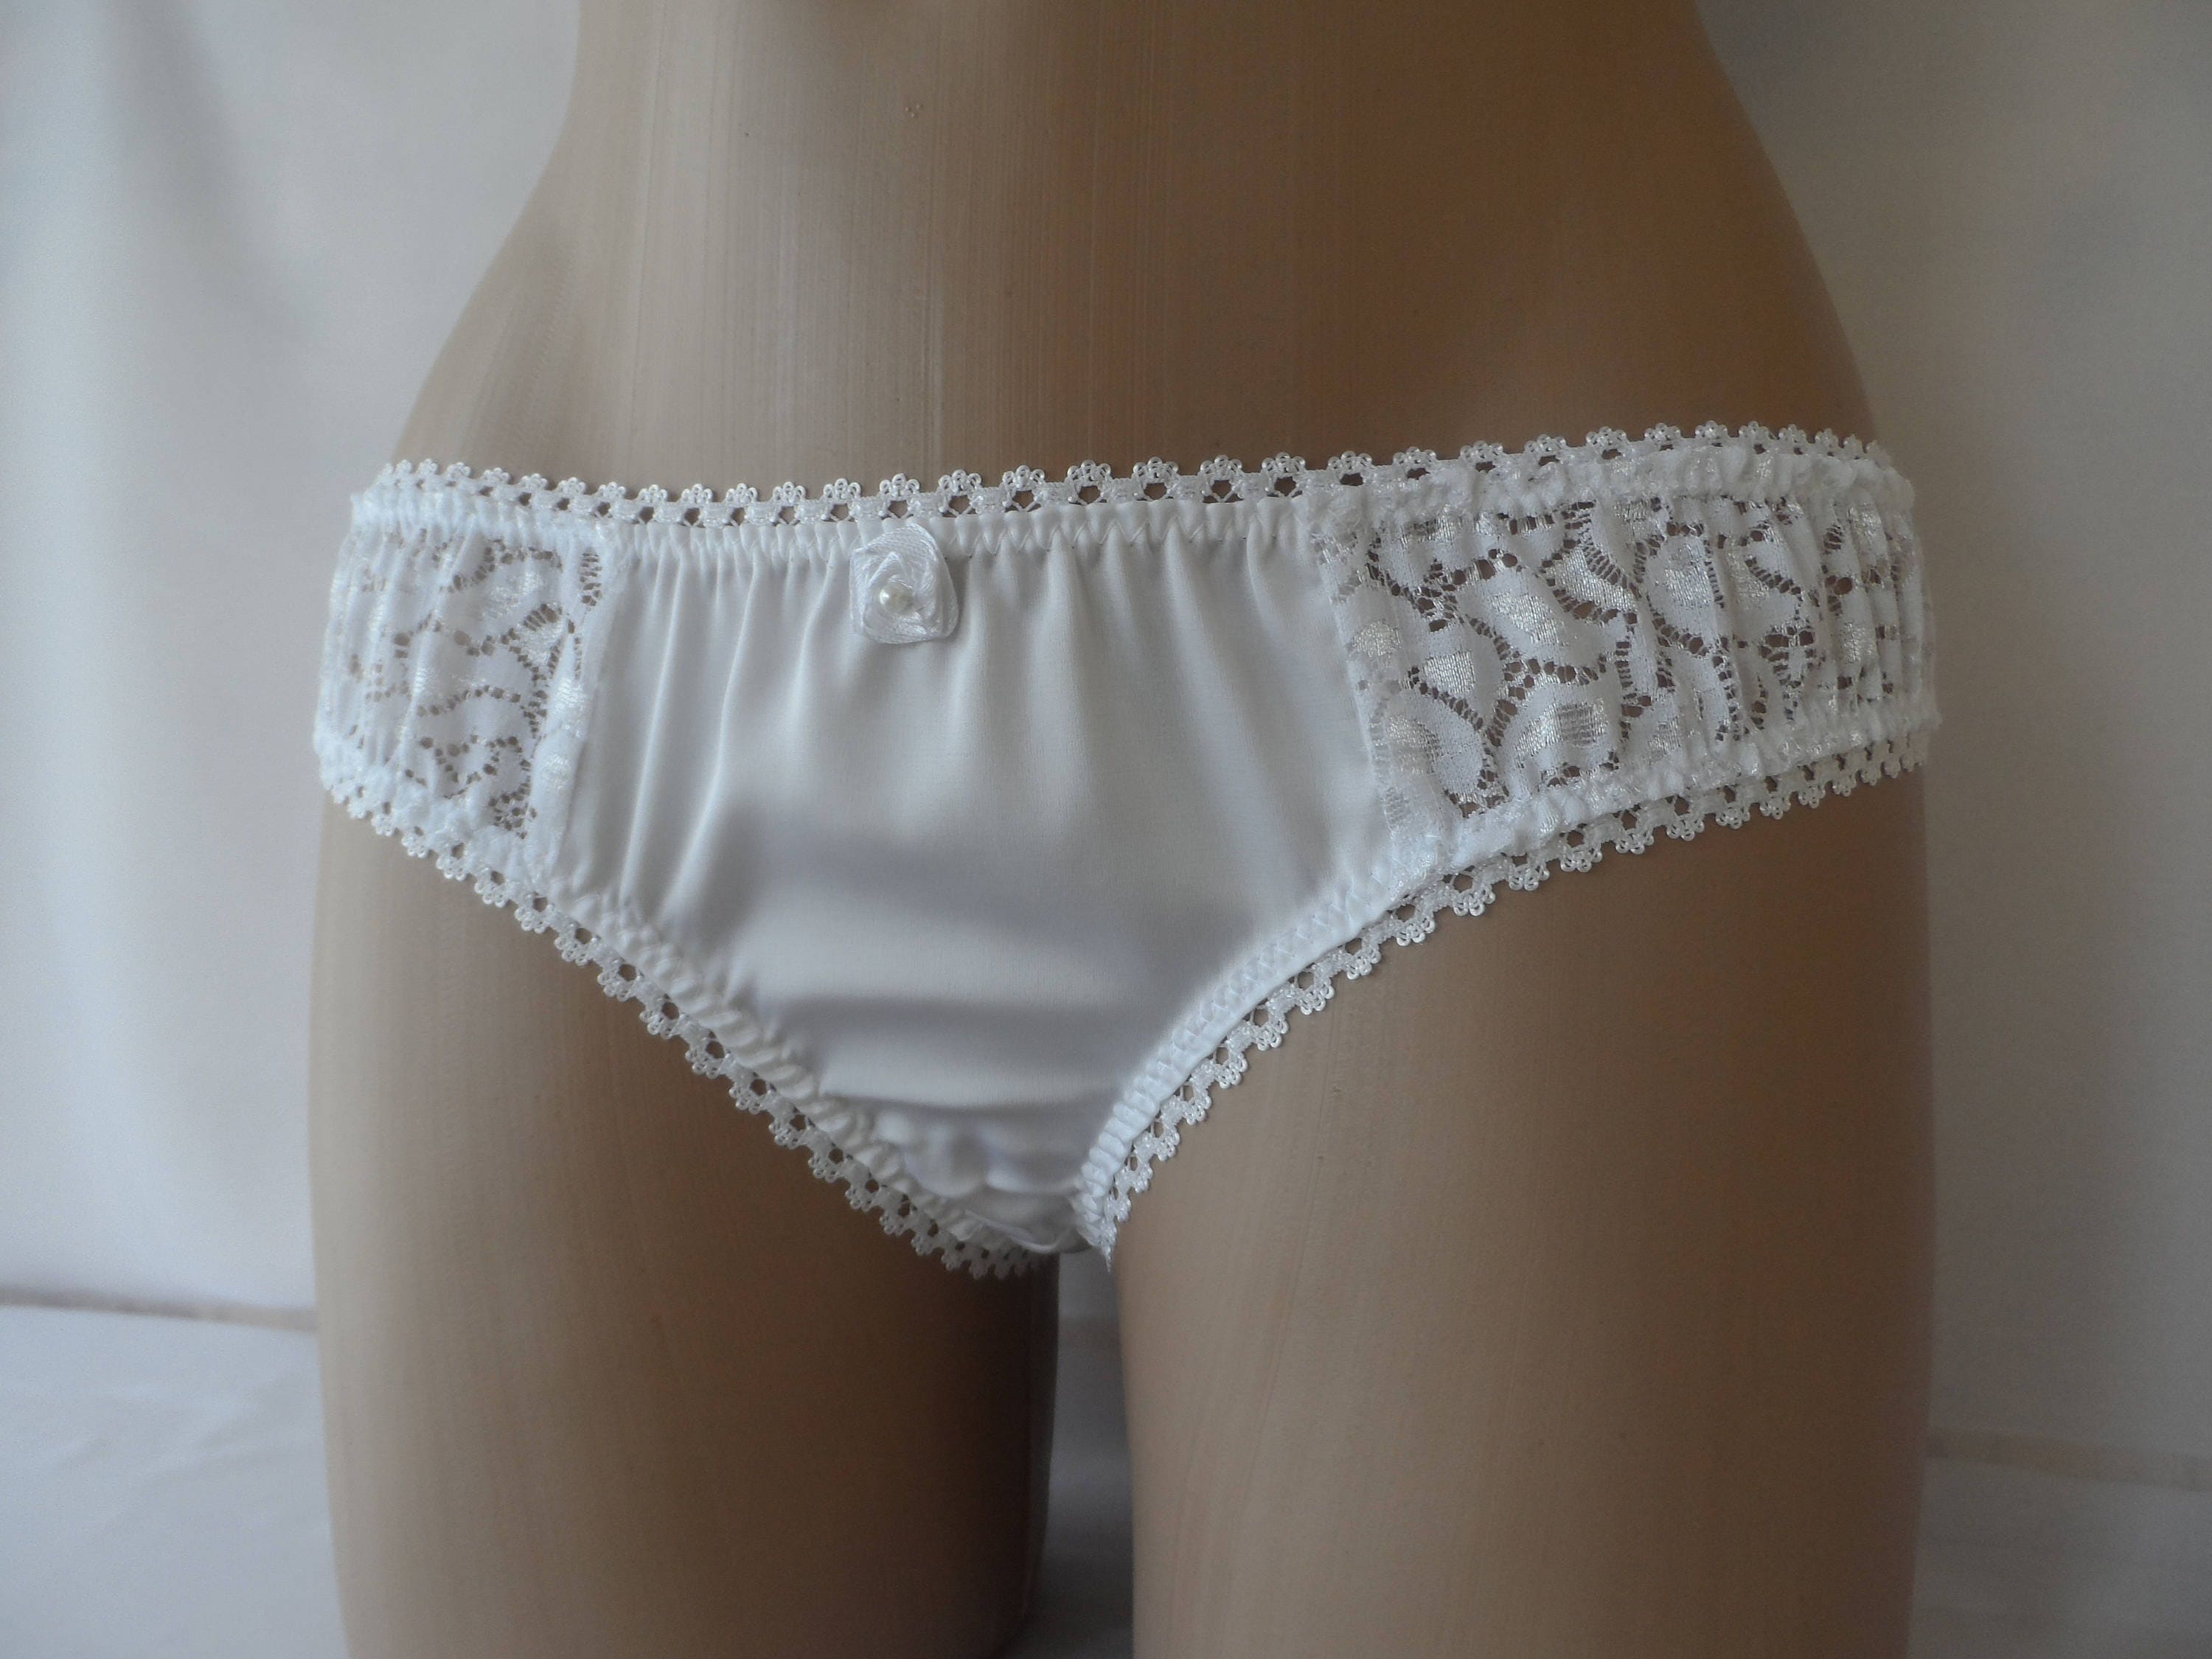 Girls Wet White Cotton Panties